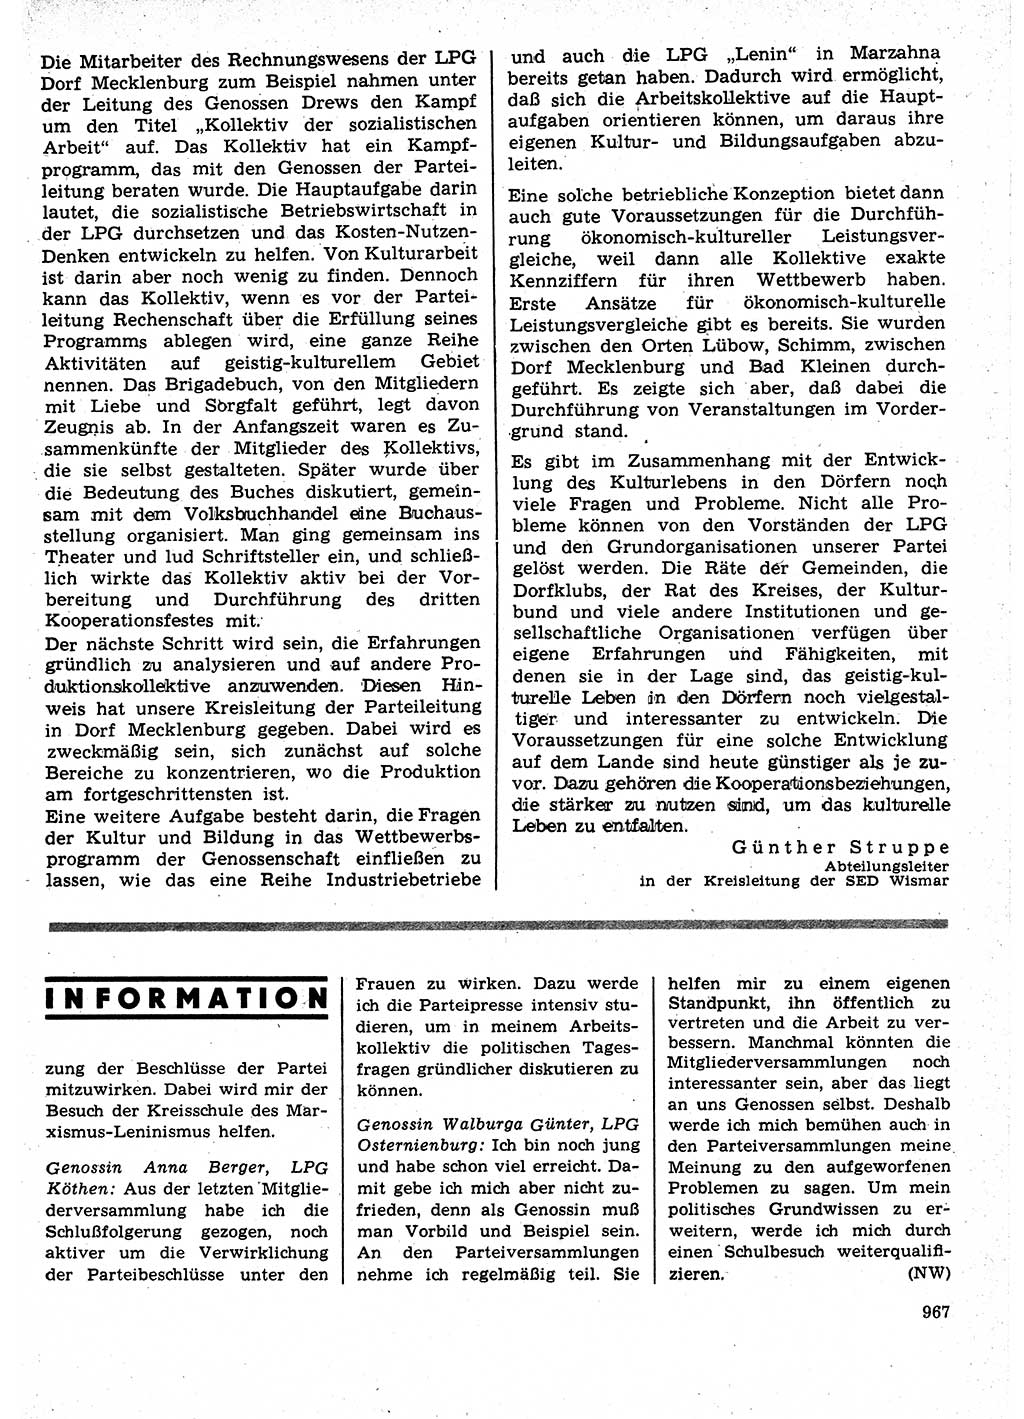 Neuer Weg (NW), Organ des Zentralkomitees (ZK) der SED (Sozialistische Einheitspartei Deutschlands) für Fragen des Parteilebens, 25. Jahrgang [Deutsche Demokratische Republik (DDR)] 1970, Seite 967 (NW ZK SED DDR 1970, S. 967)